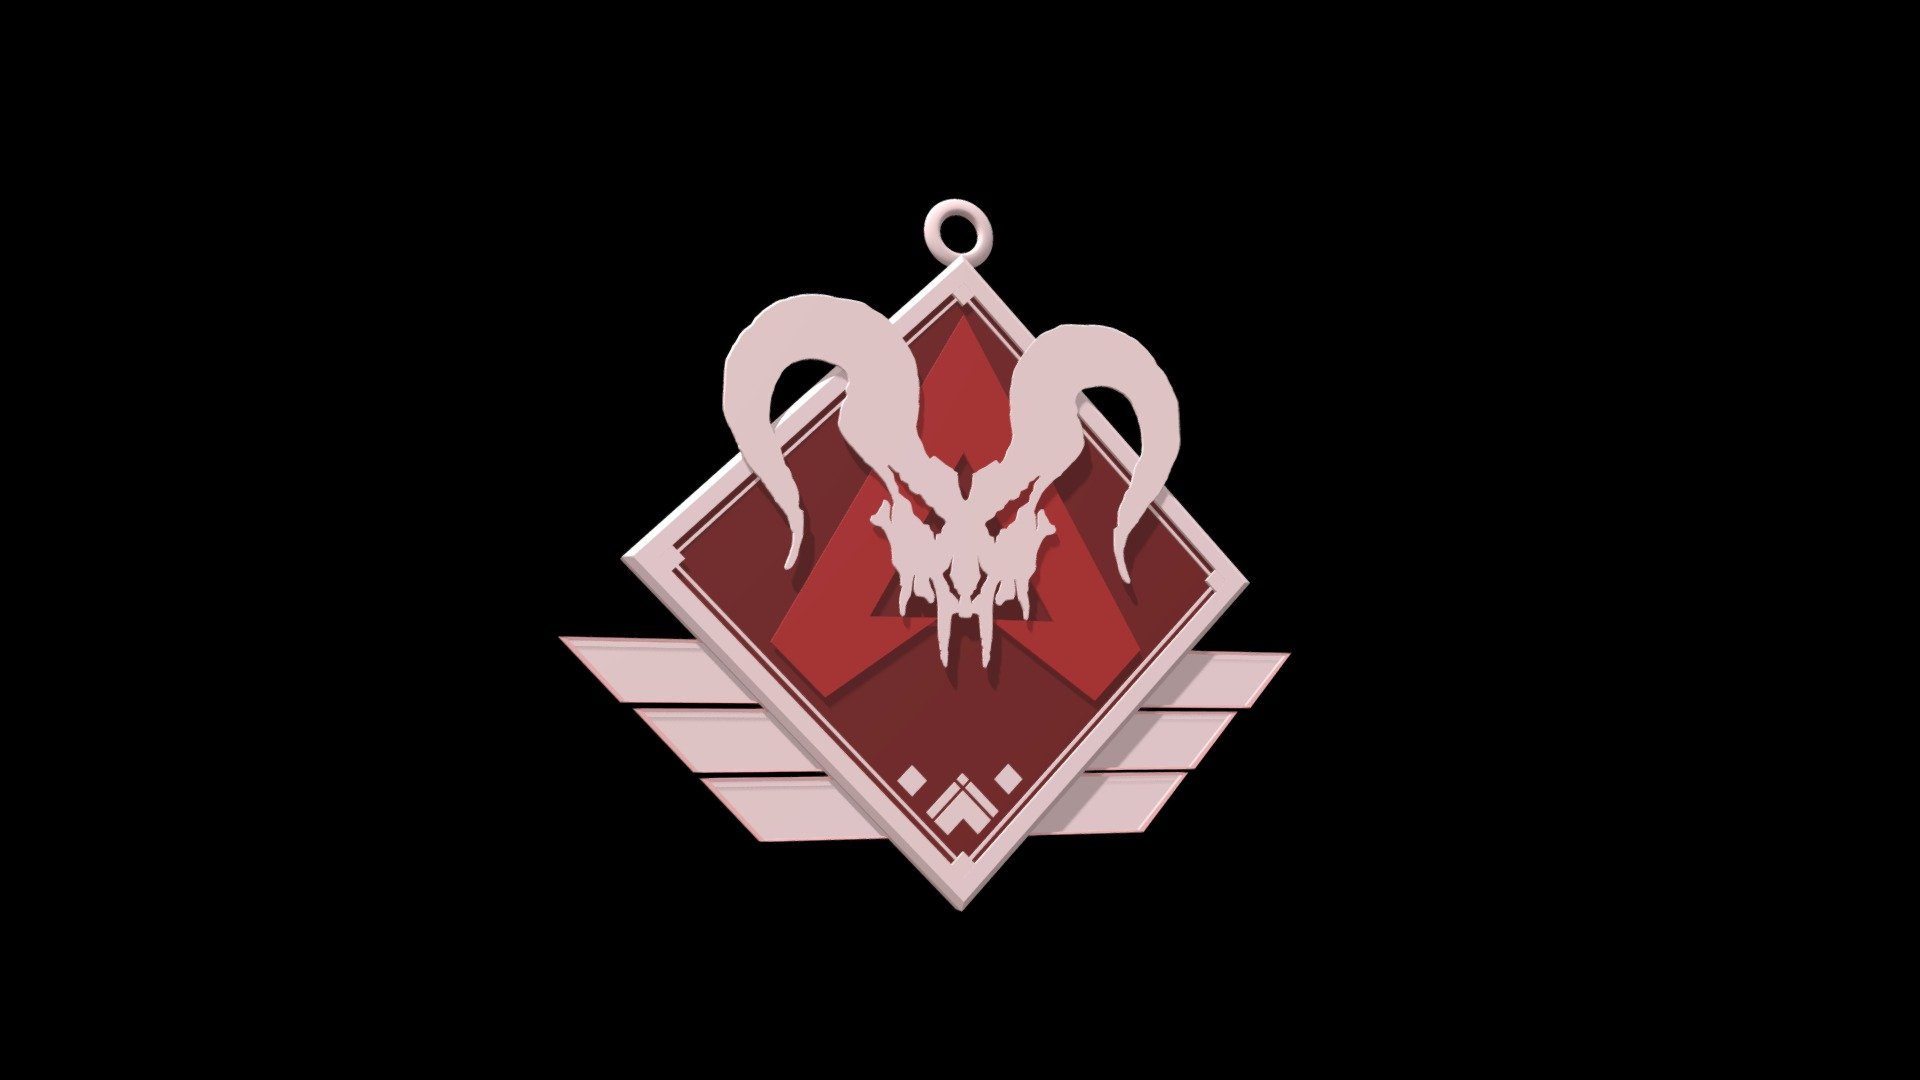 Made a design of season 8 predator badge : r/apexlegends